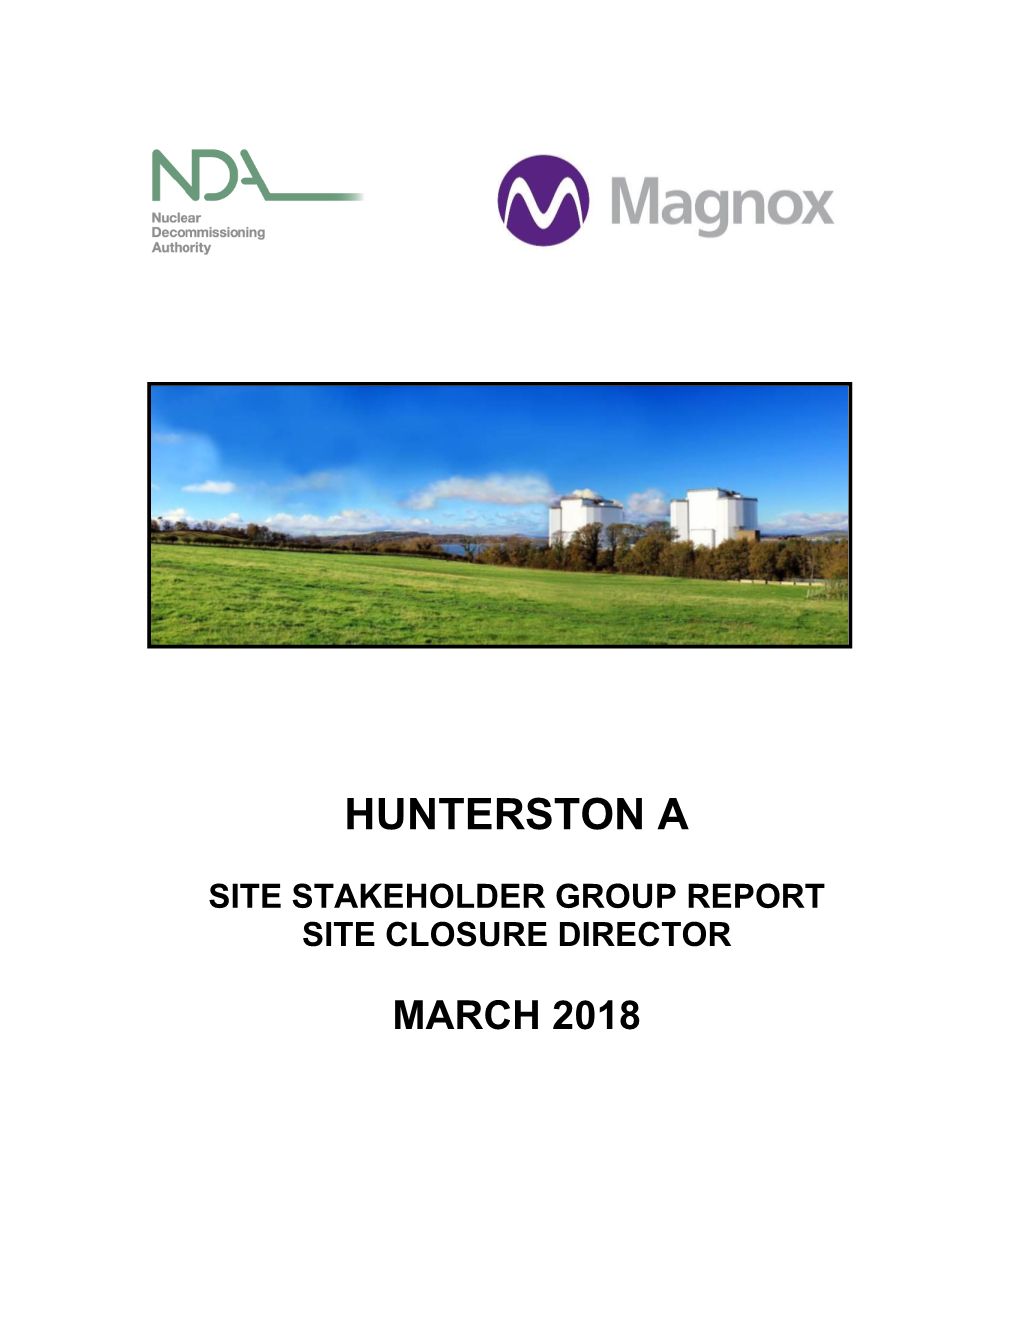 Hunterston a Site Closure Director Report